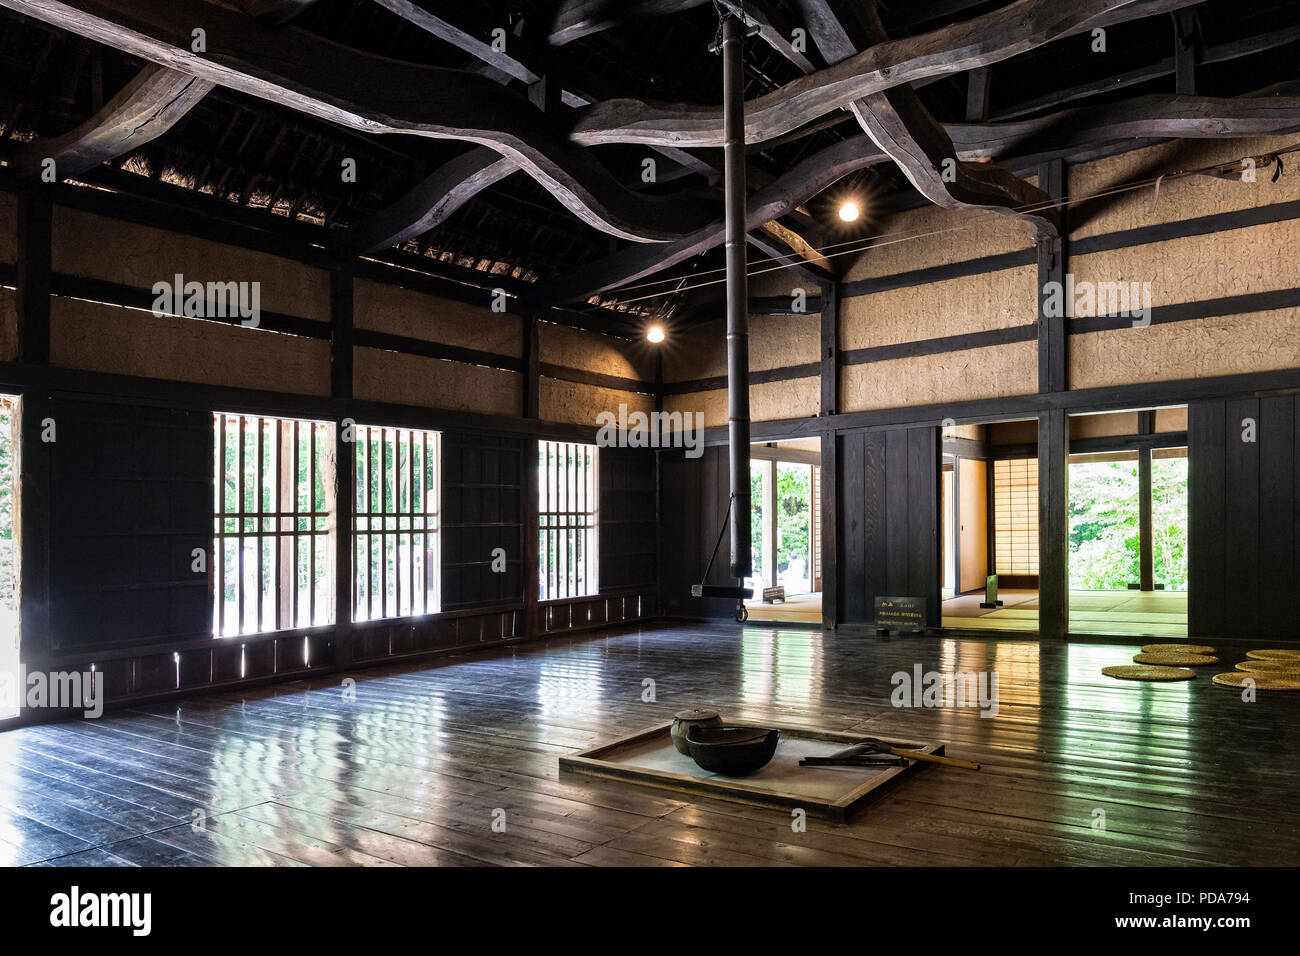 Le Japon, l'île de Honshu, le Kanto, Kawasaki, le Nihon Minka-en, historiques et patrimoniaux Musée de la vie japonaise, à l'intérieur d'une maison du 18ème siècle. Banque D'Images